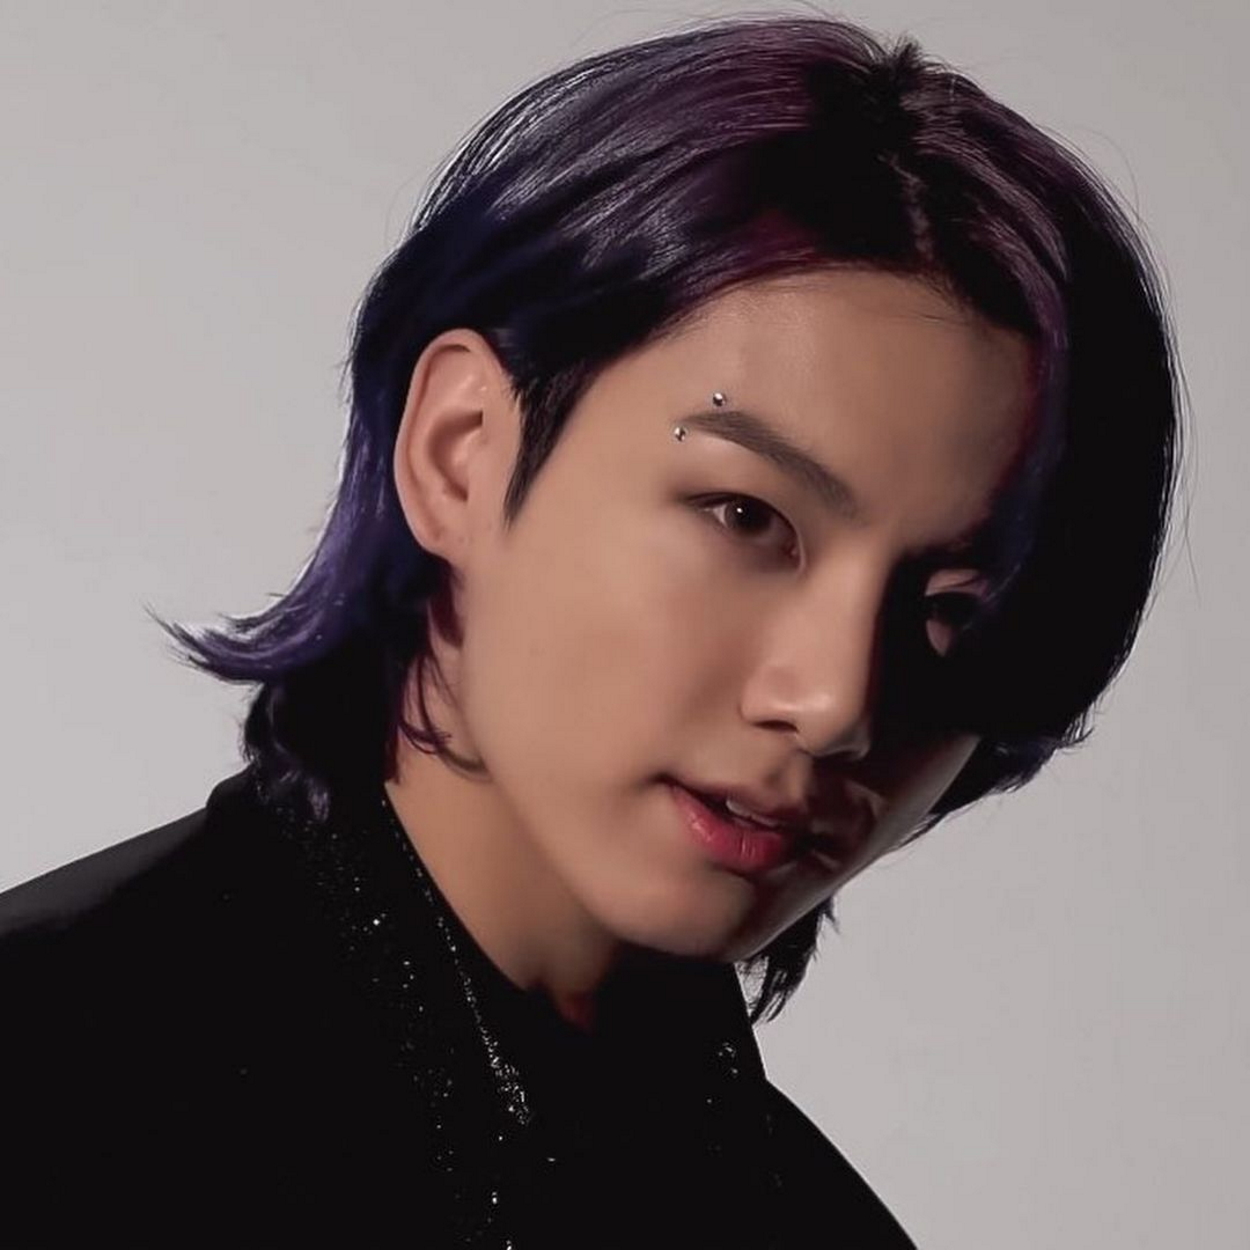 jungkook purple hair